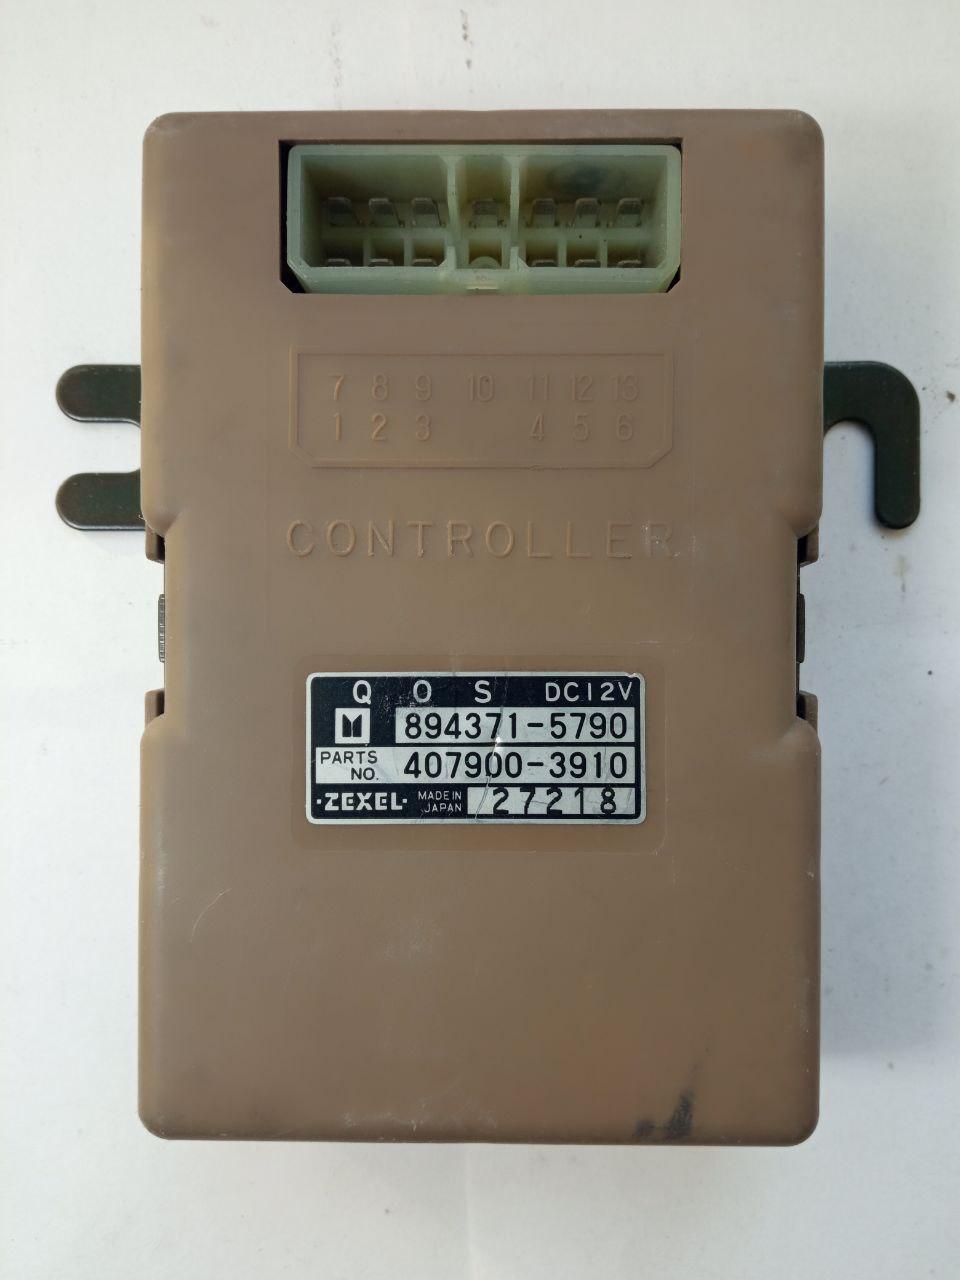 Електронний блок керування Zexel Controler QOC DC12V 894371-5790 / 407900-3910 / 27218